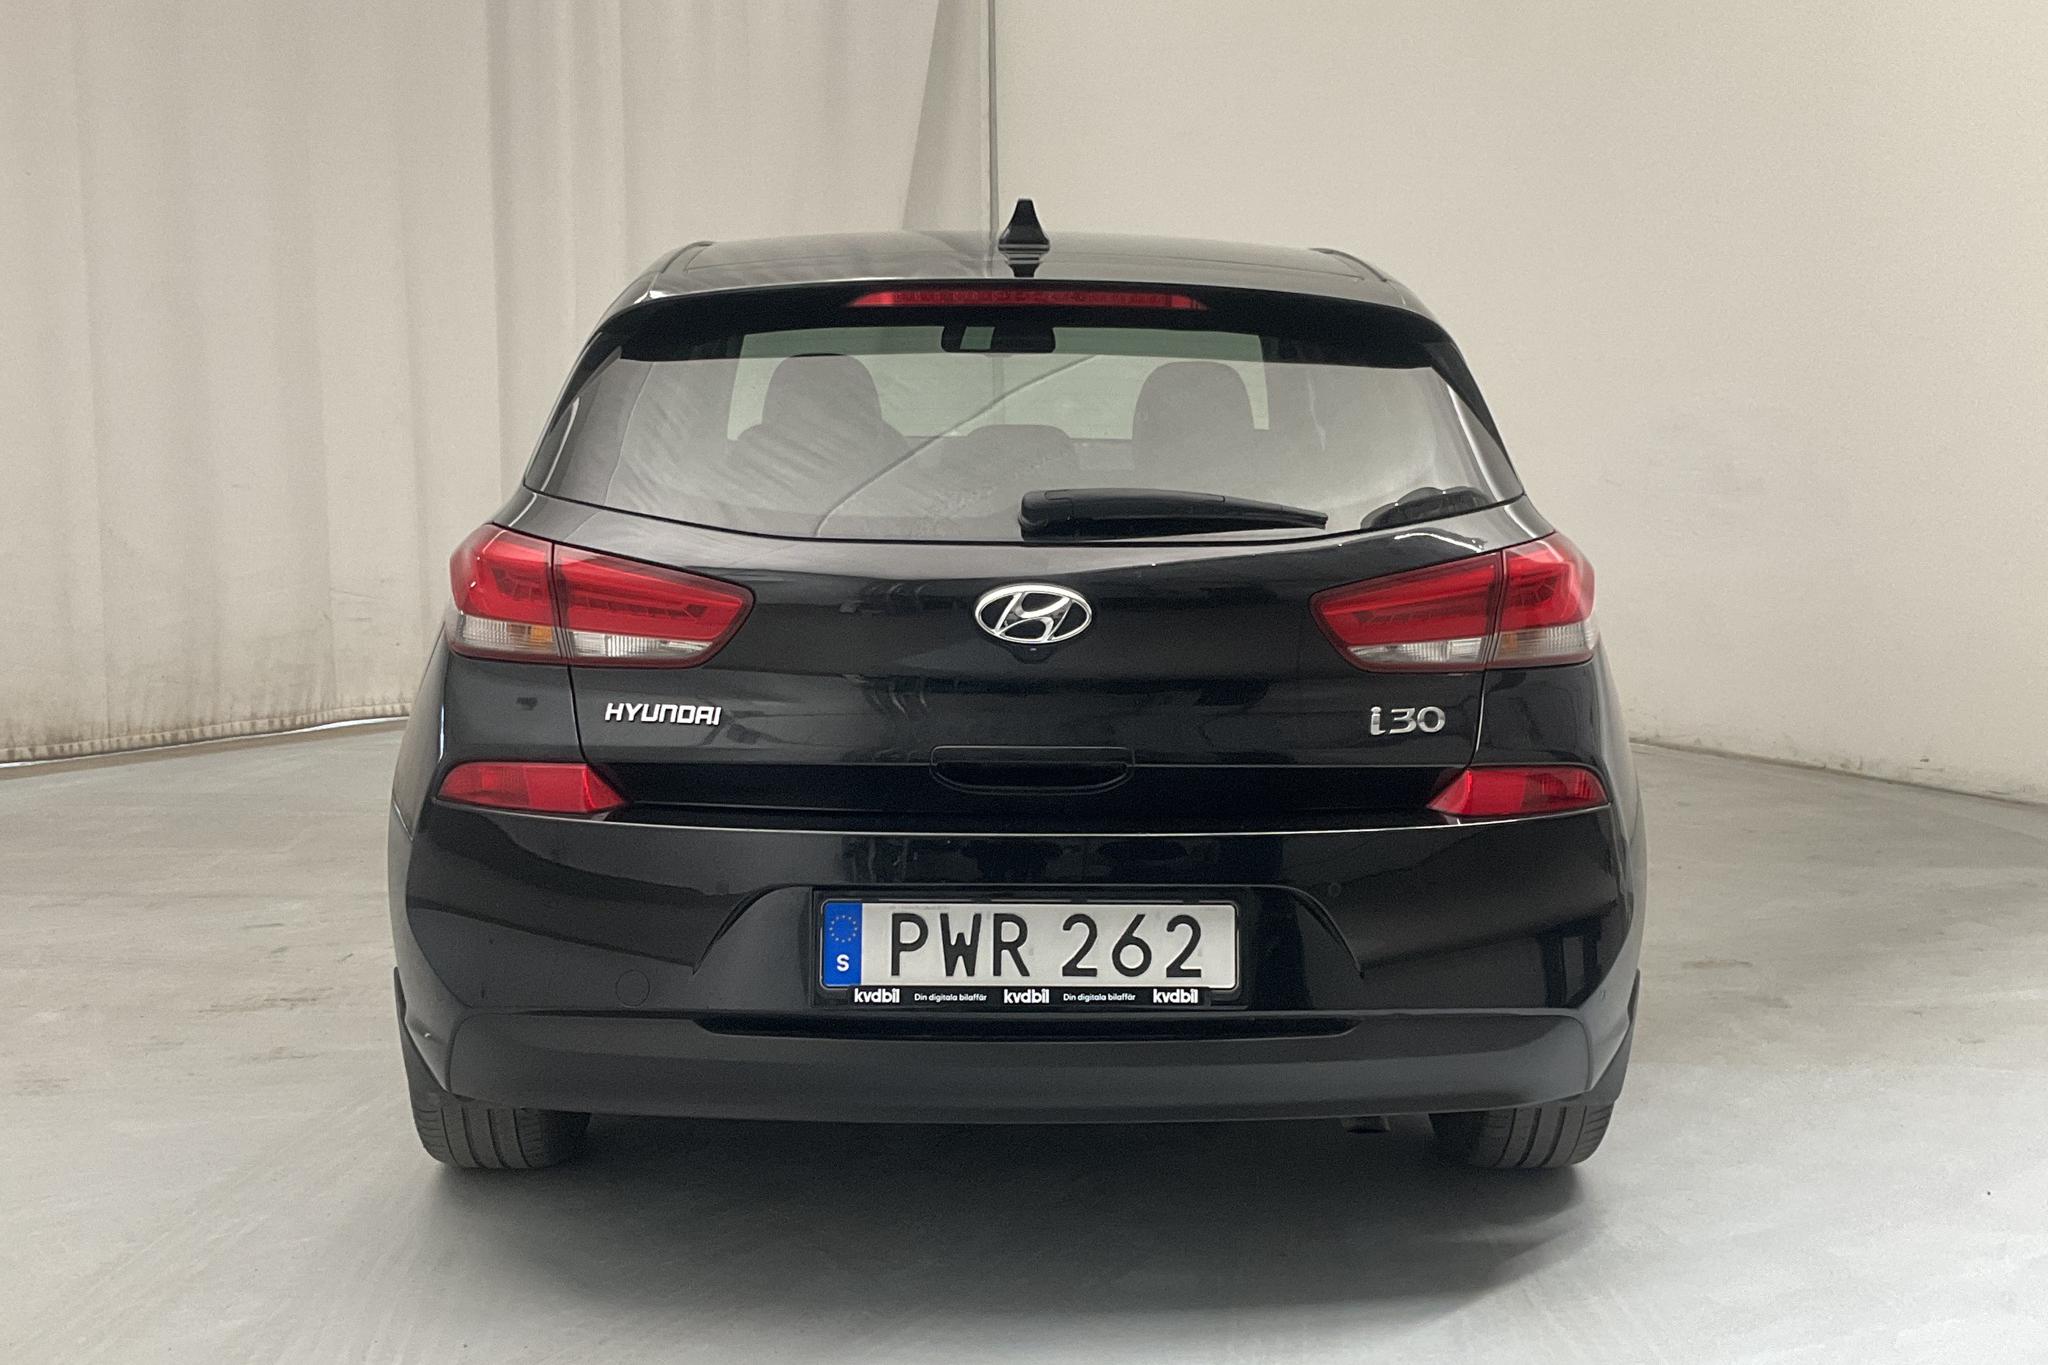 Hyundai i30 1.4 T-GDi 5dr (140hk) - 9 882 mil - Manuell - svart - 2018